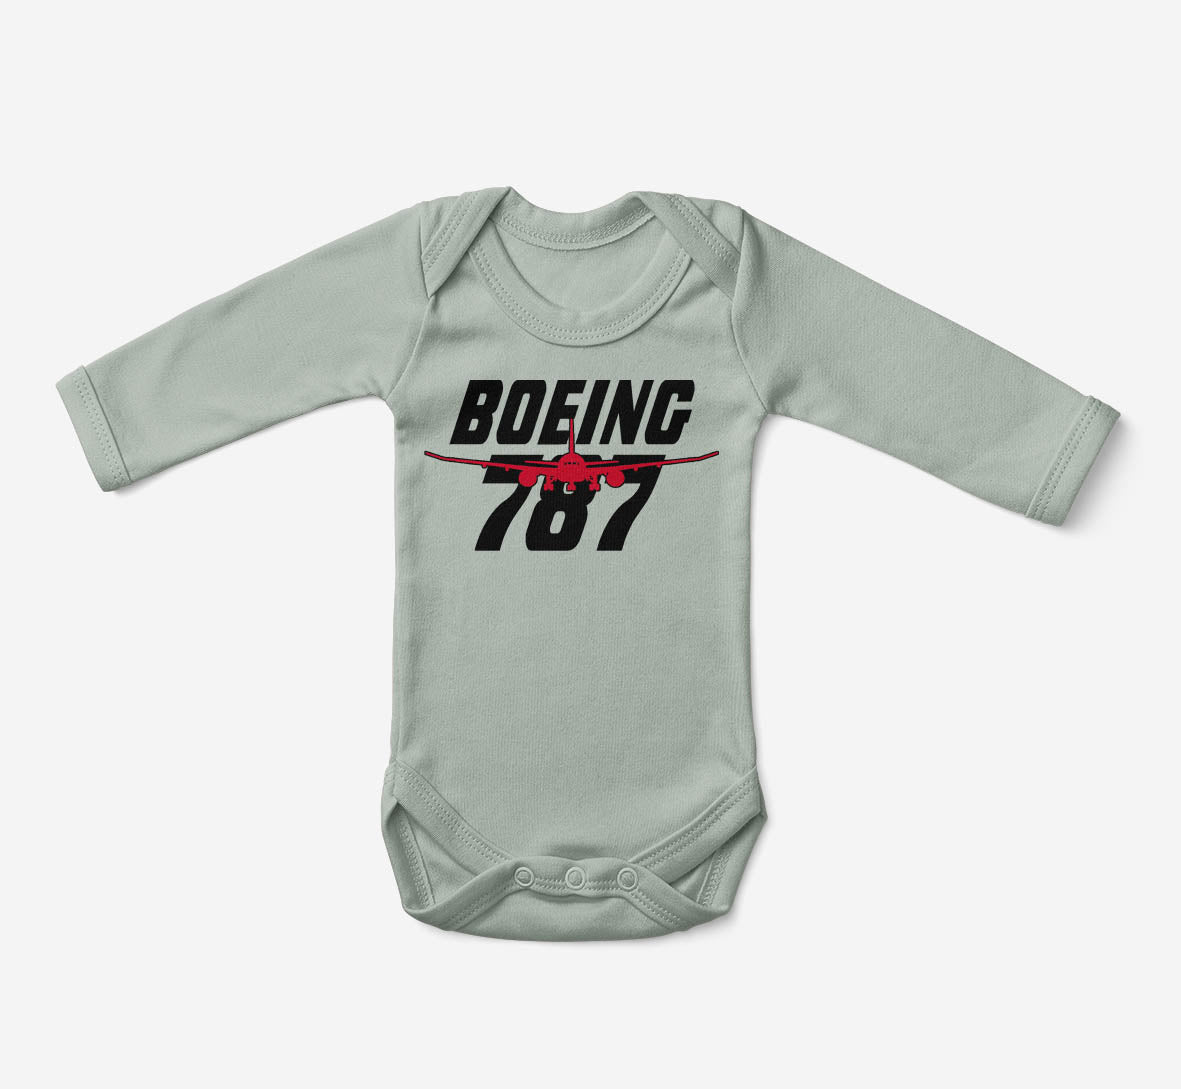 Amazing Boeing 787 Designed Baby Bodysuits